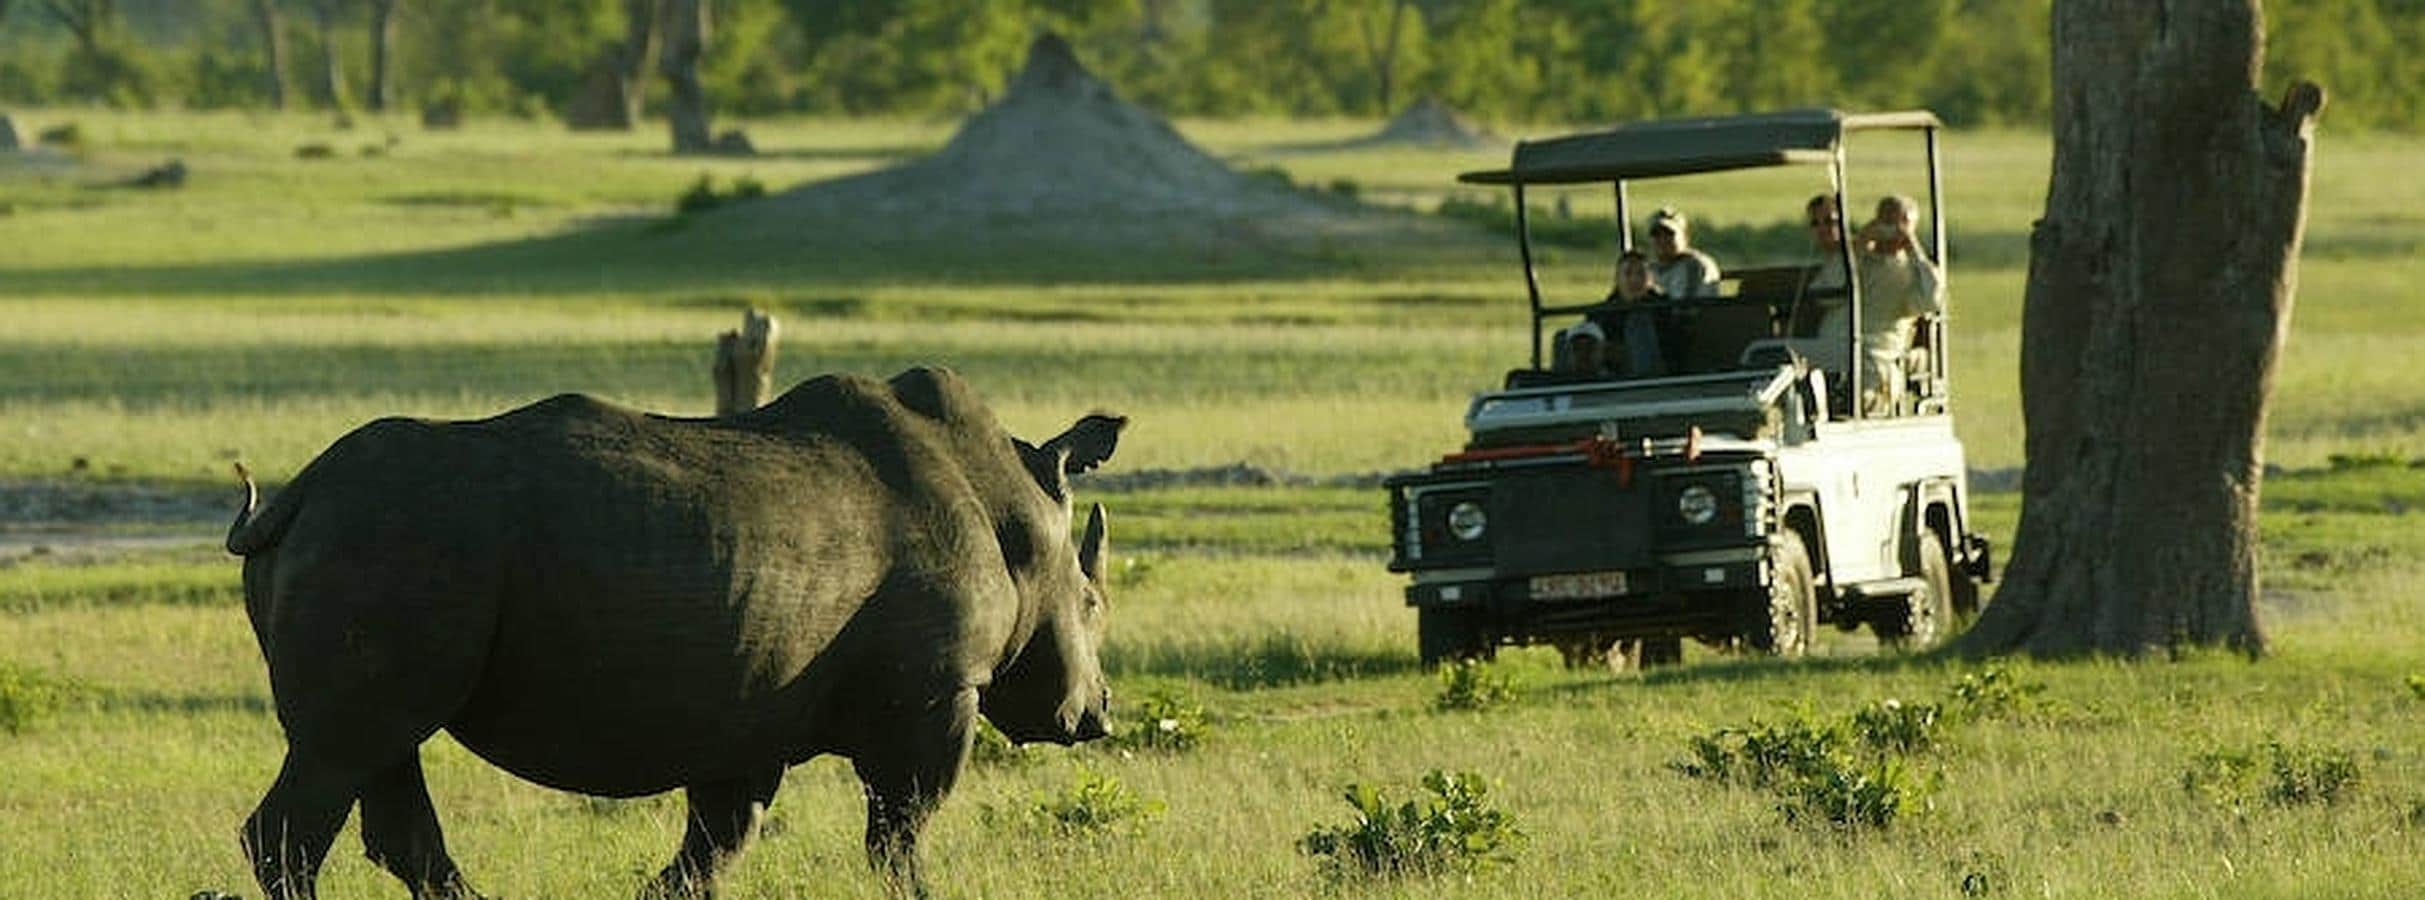 Botsuana, naturaleza en estado puro. Botsuana es conocida por tener una de las mejores áreas de fauna silvestre de todo el continente africano.  Fotos: The African Experiences